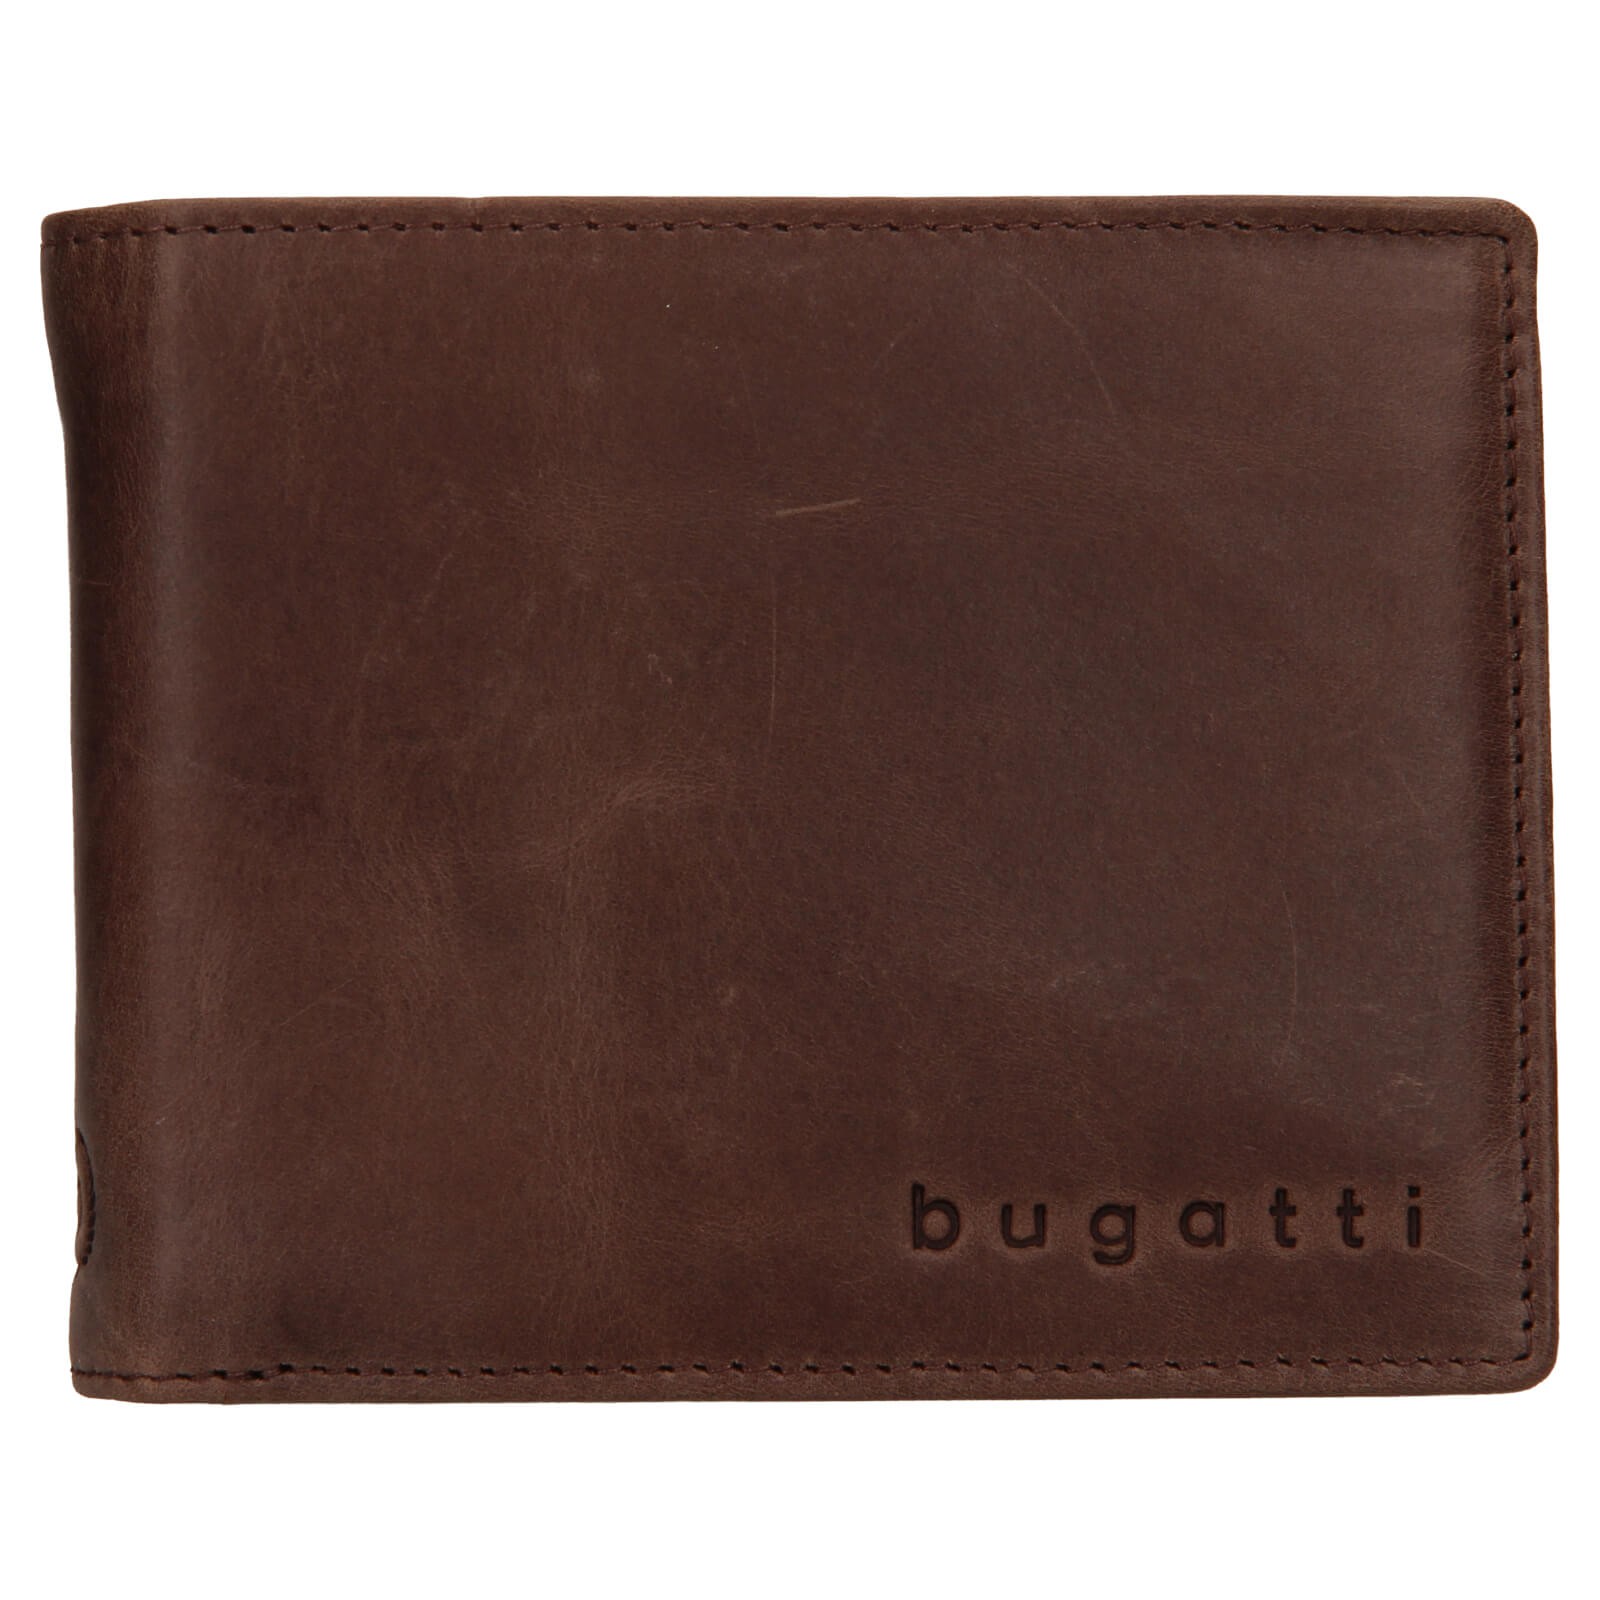 Pánská kožená peněženka Bugatti Michael - tmavě hnědá